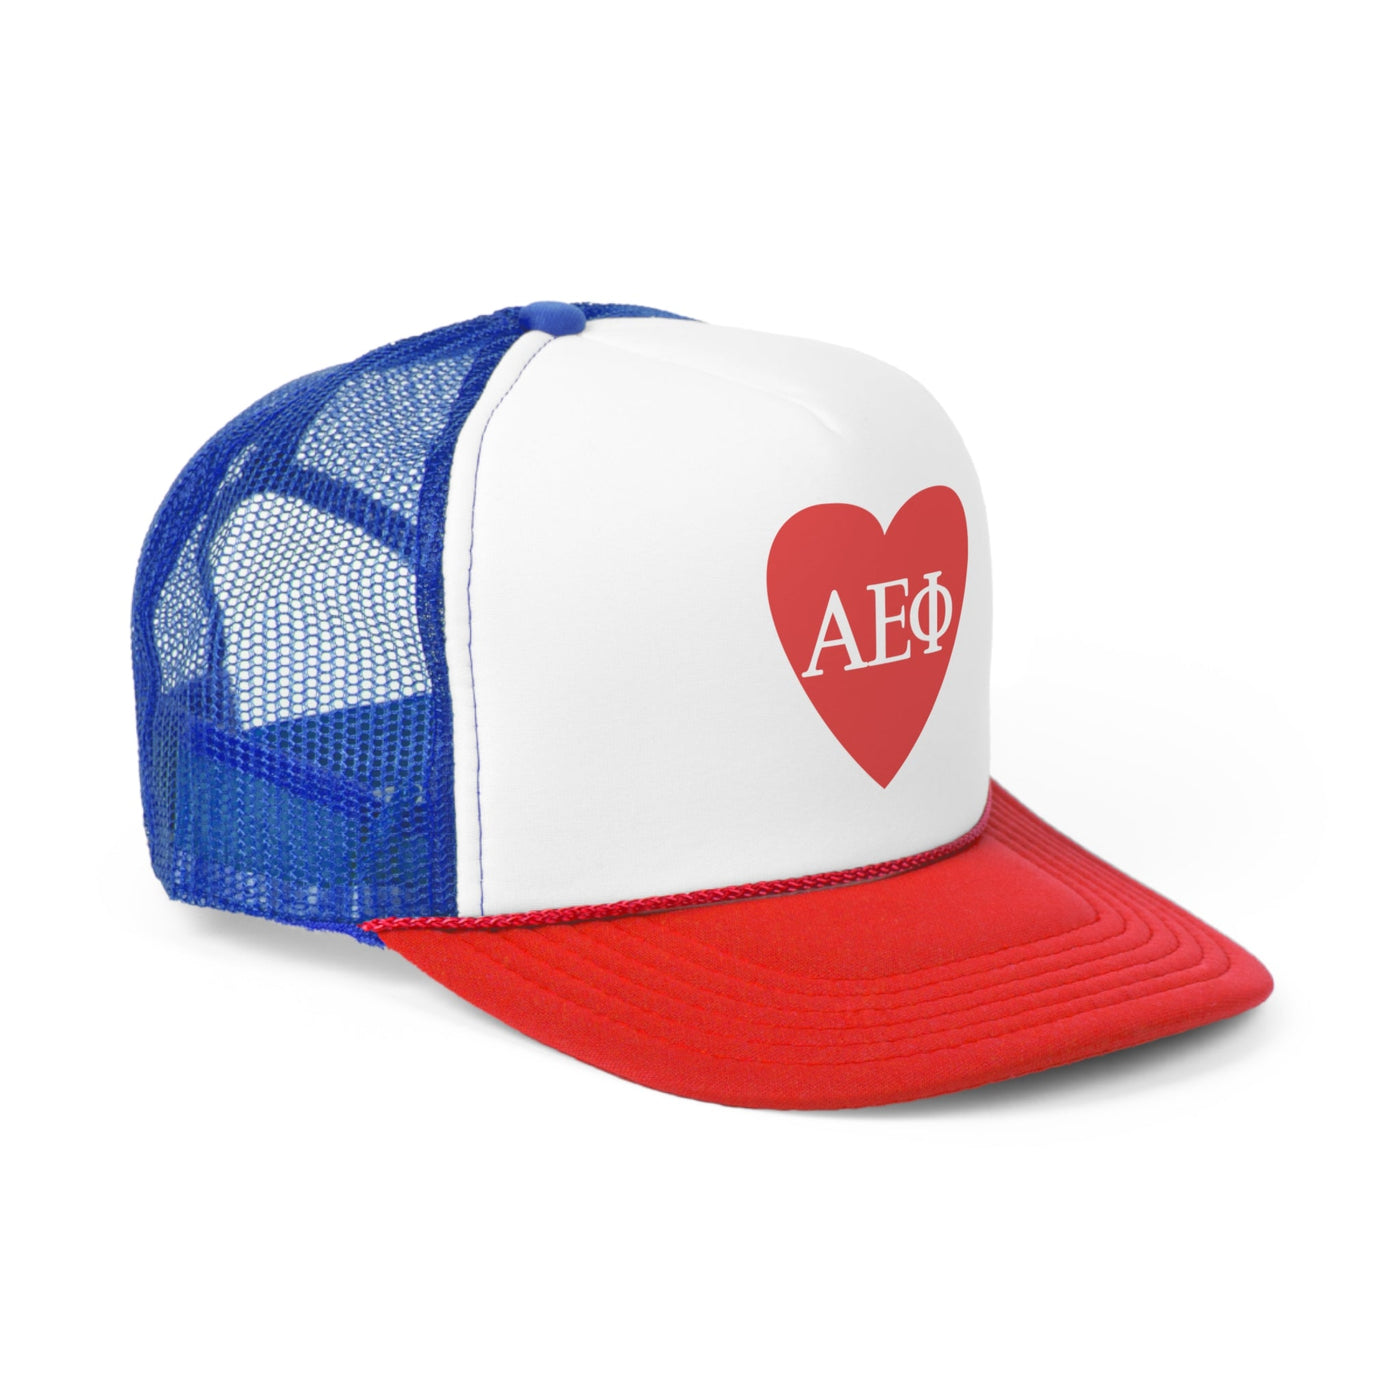 Alpha Epsilon Phi Heart Letters Sorority Foam Trucker Hat